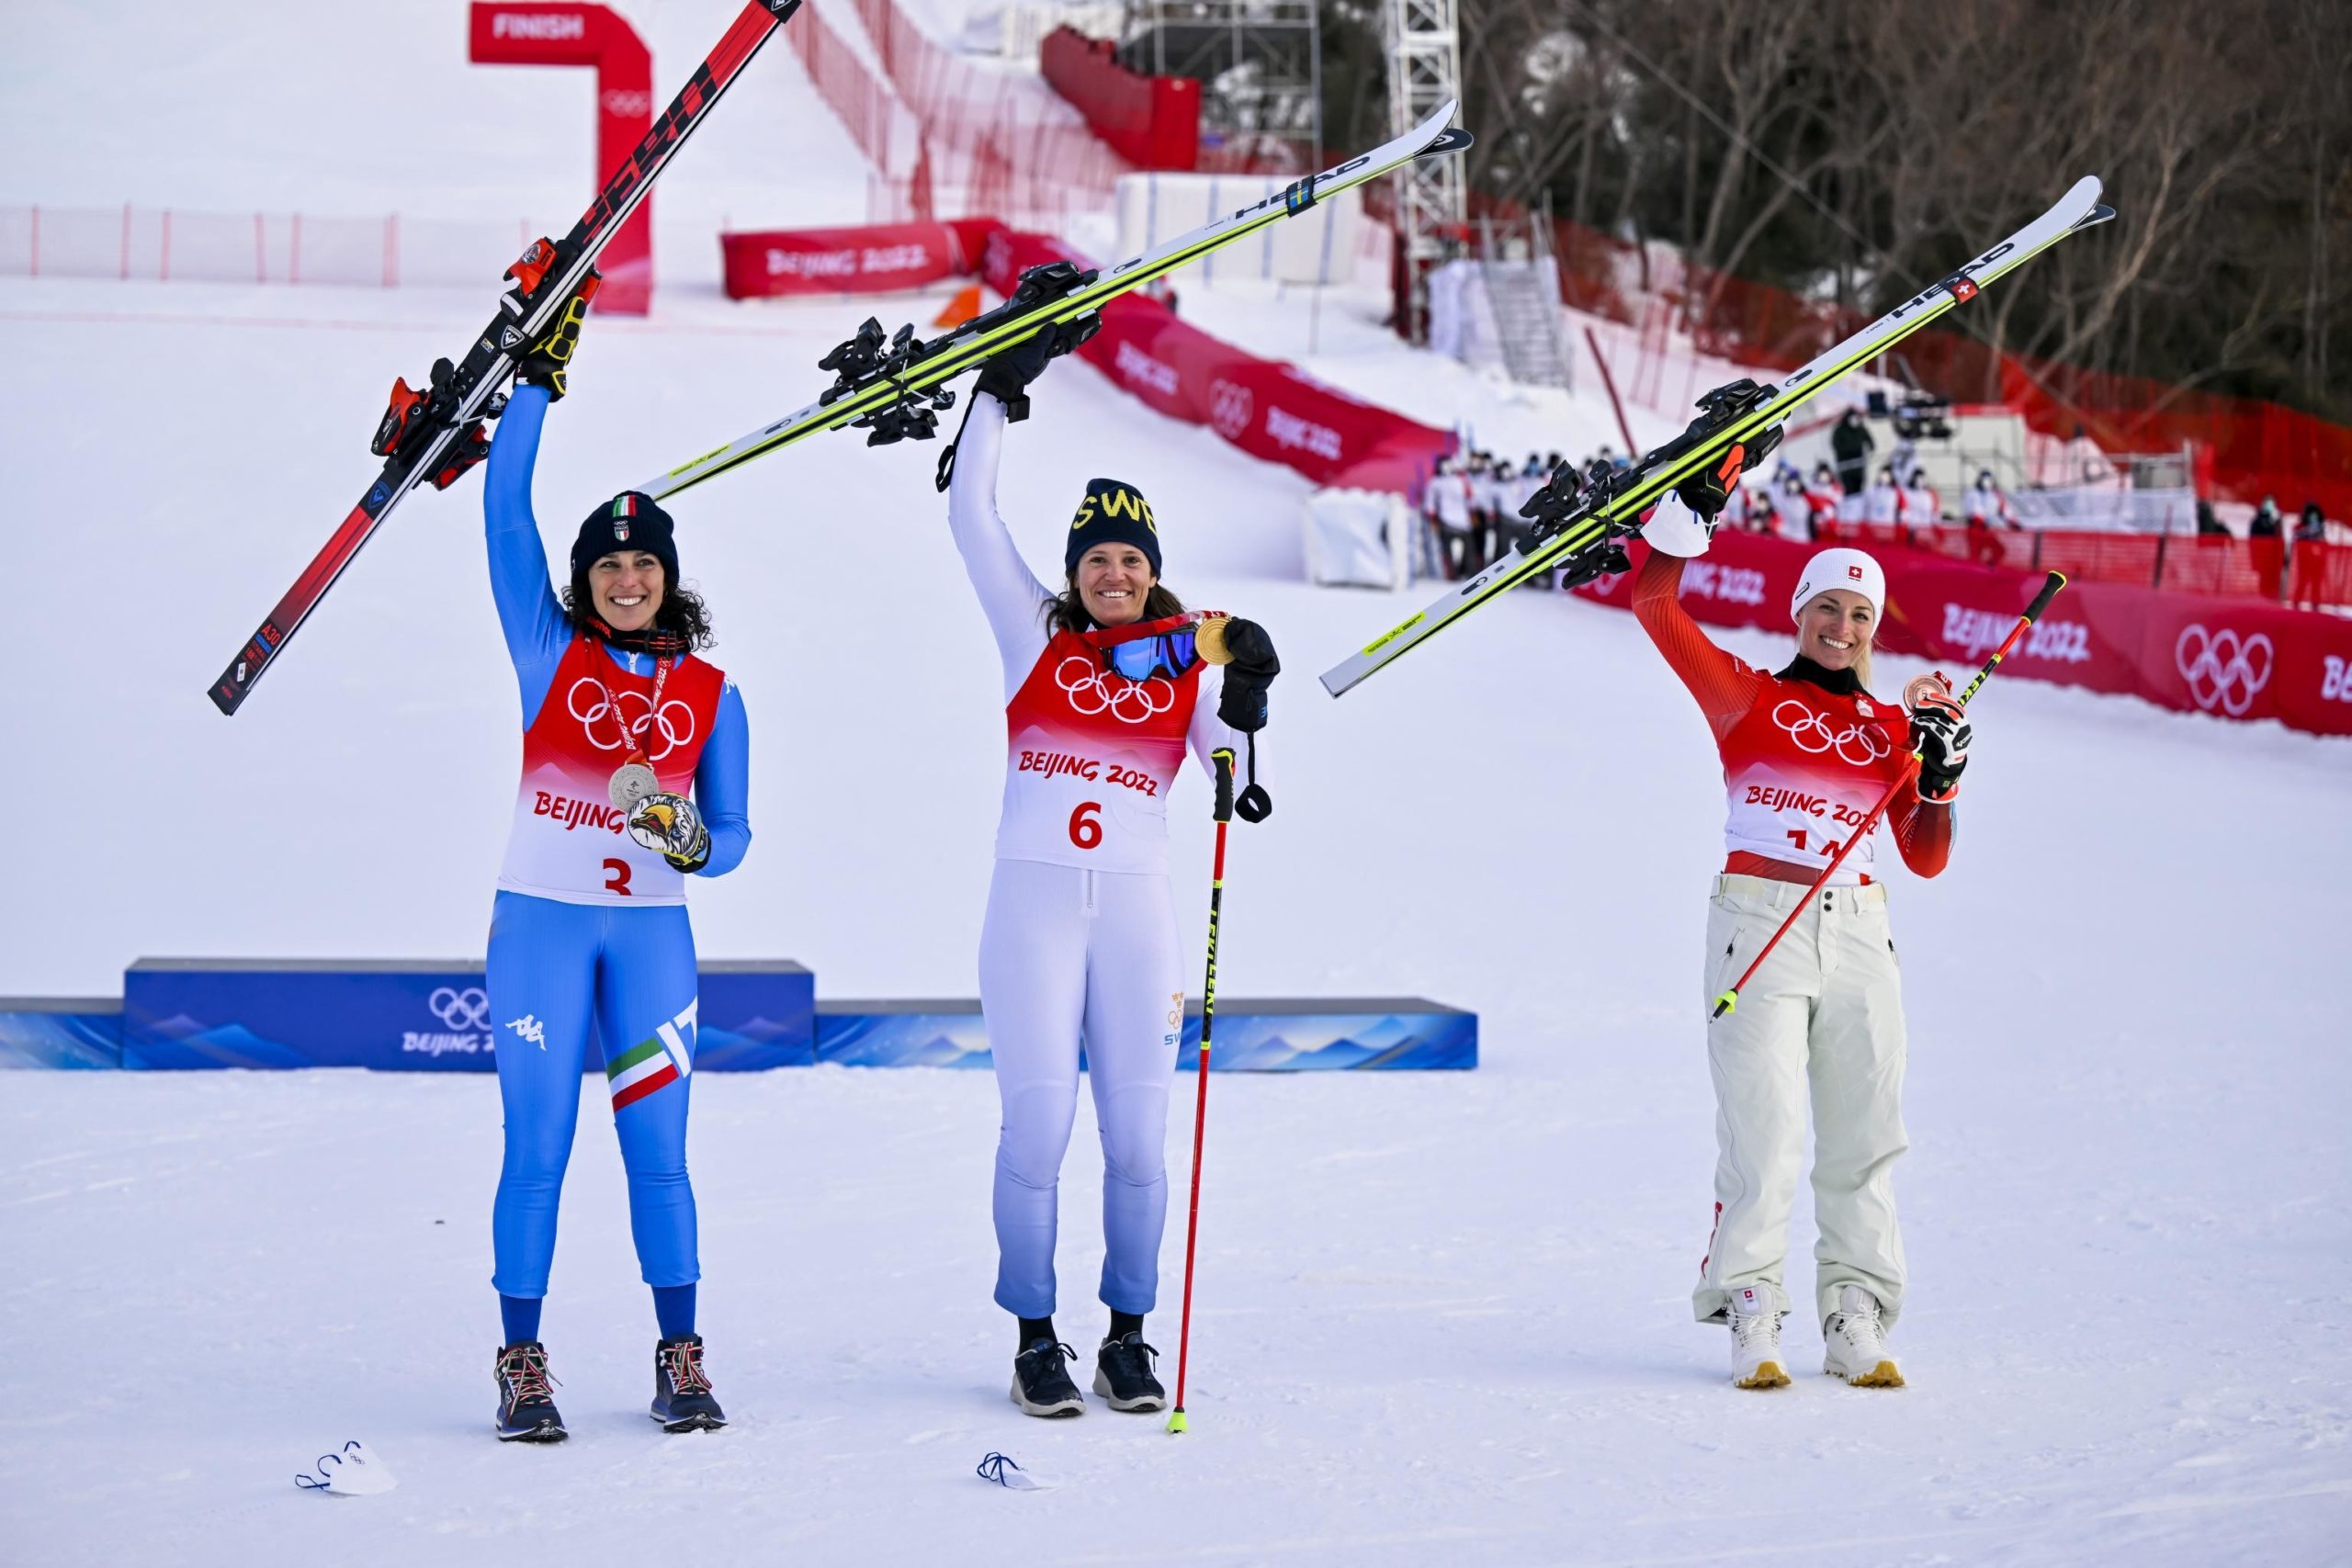 Il podio completato dalla svedese vincitrice Sara Hector e dalla svizzera Lara Gut-Behrami, terza